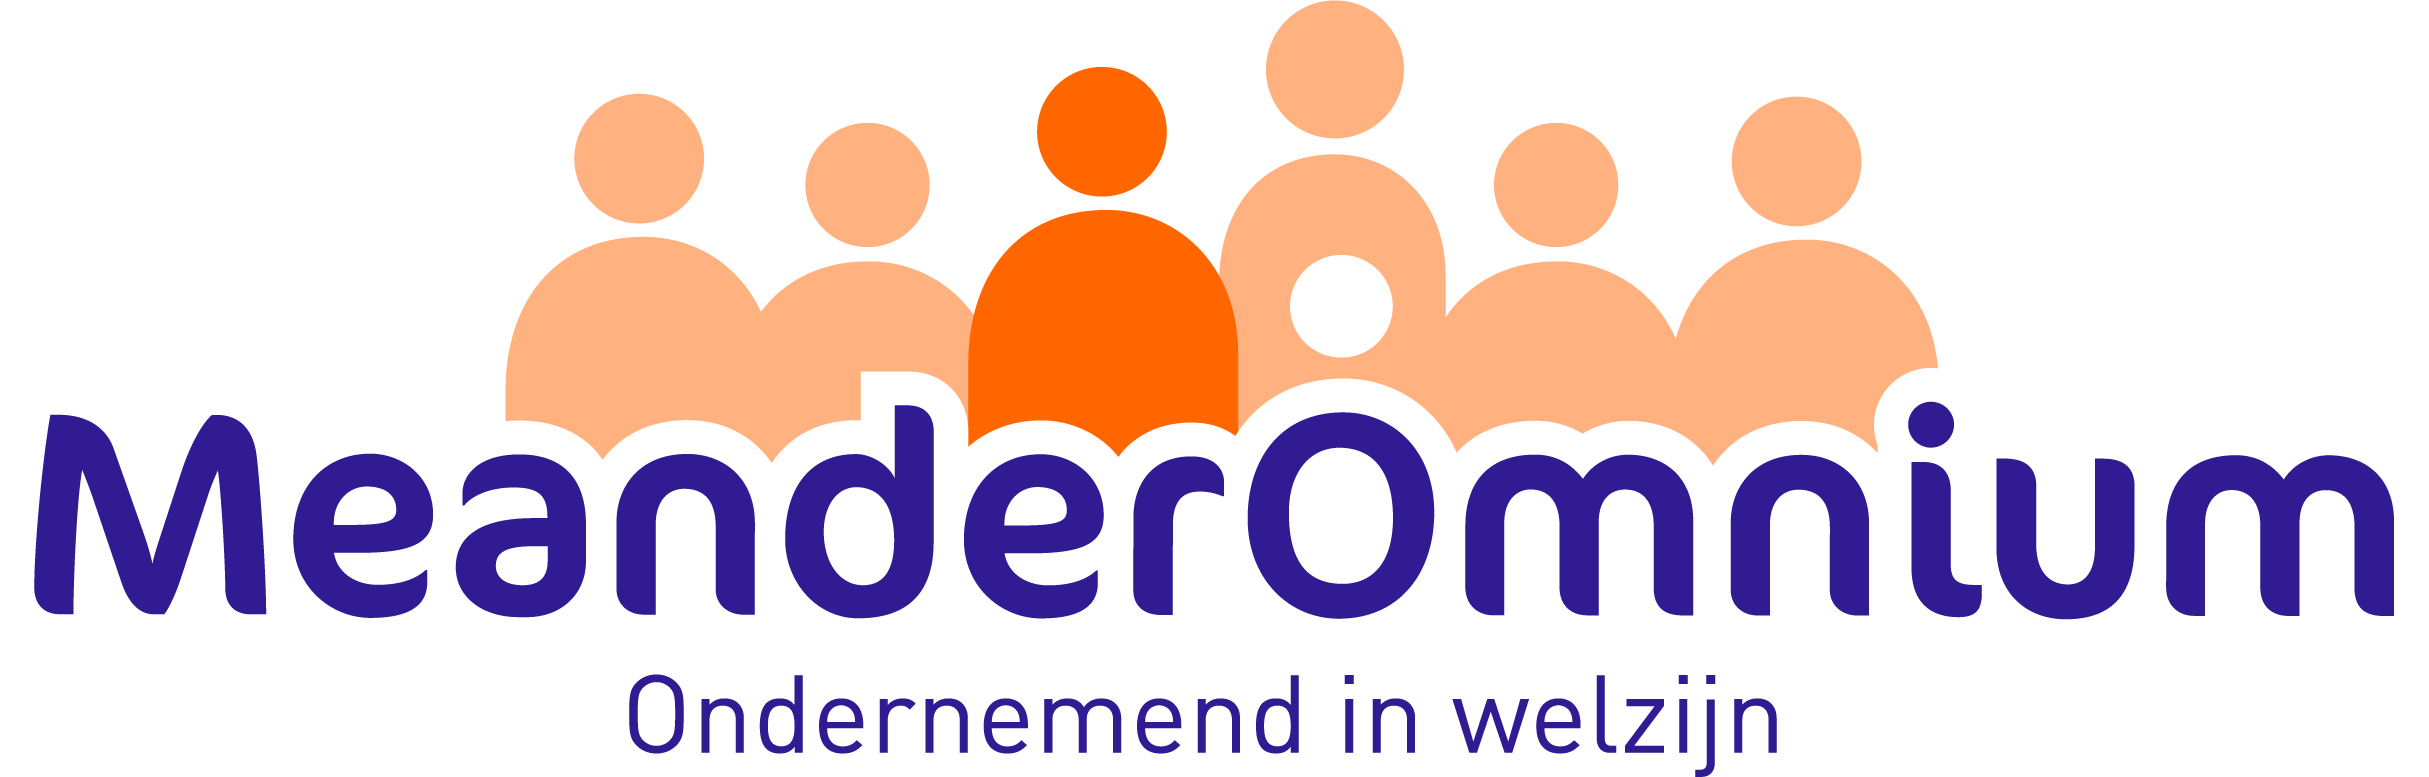 MeanderOmnium logo